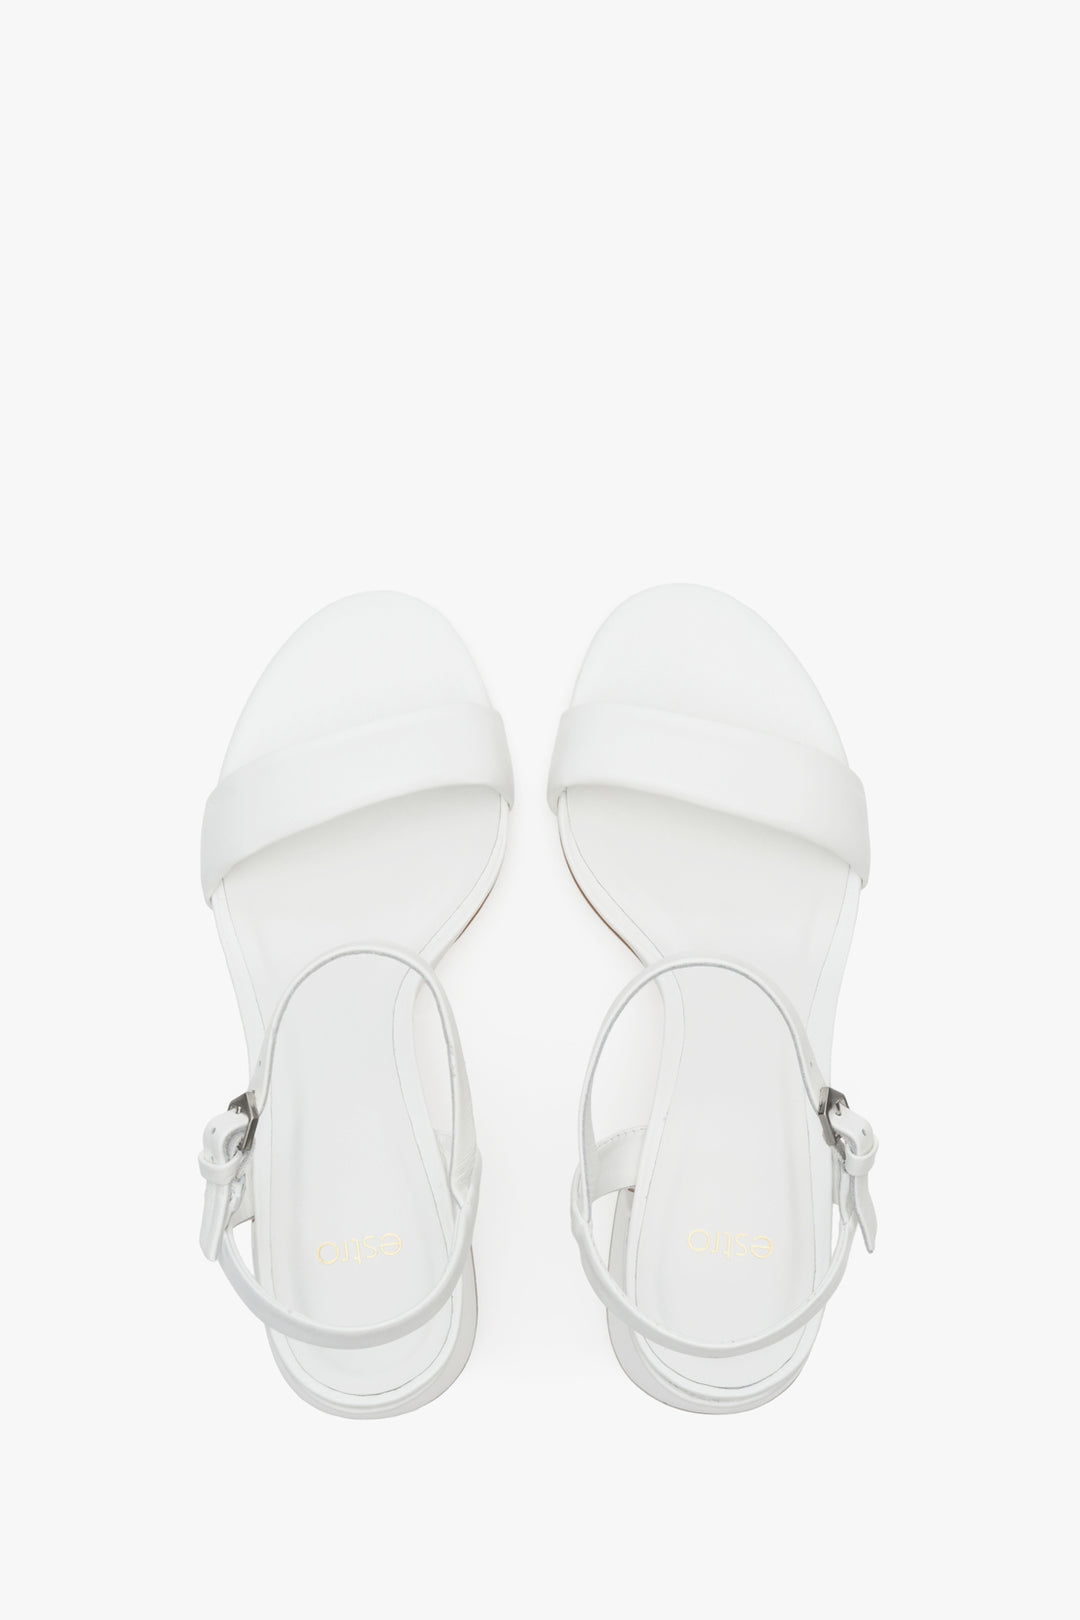 Białe sandały damskie ze skóry naturalnej z kwadratowym obcasem Estro ER00112424